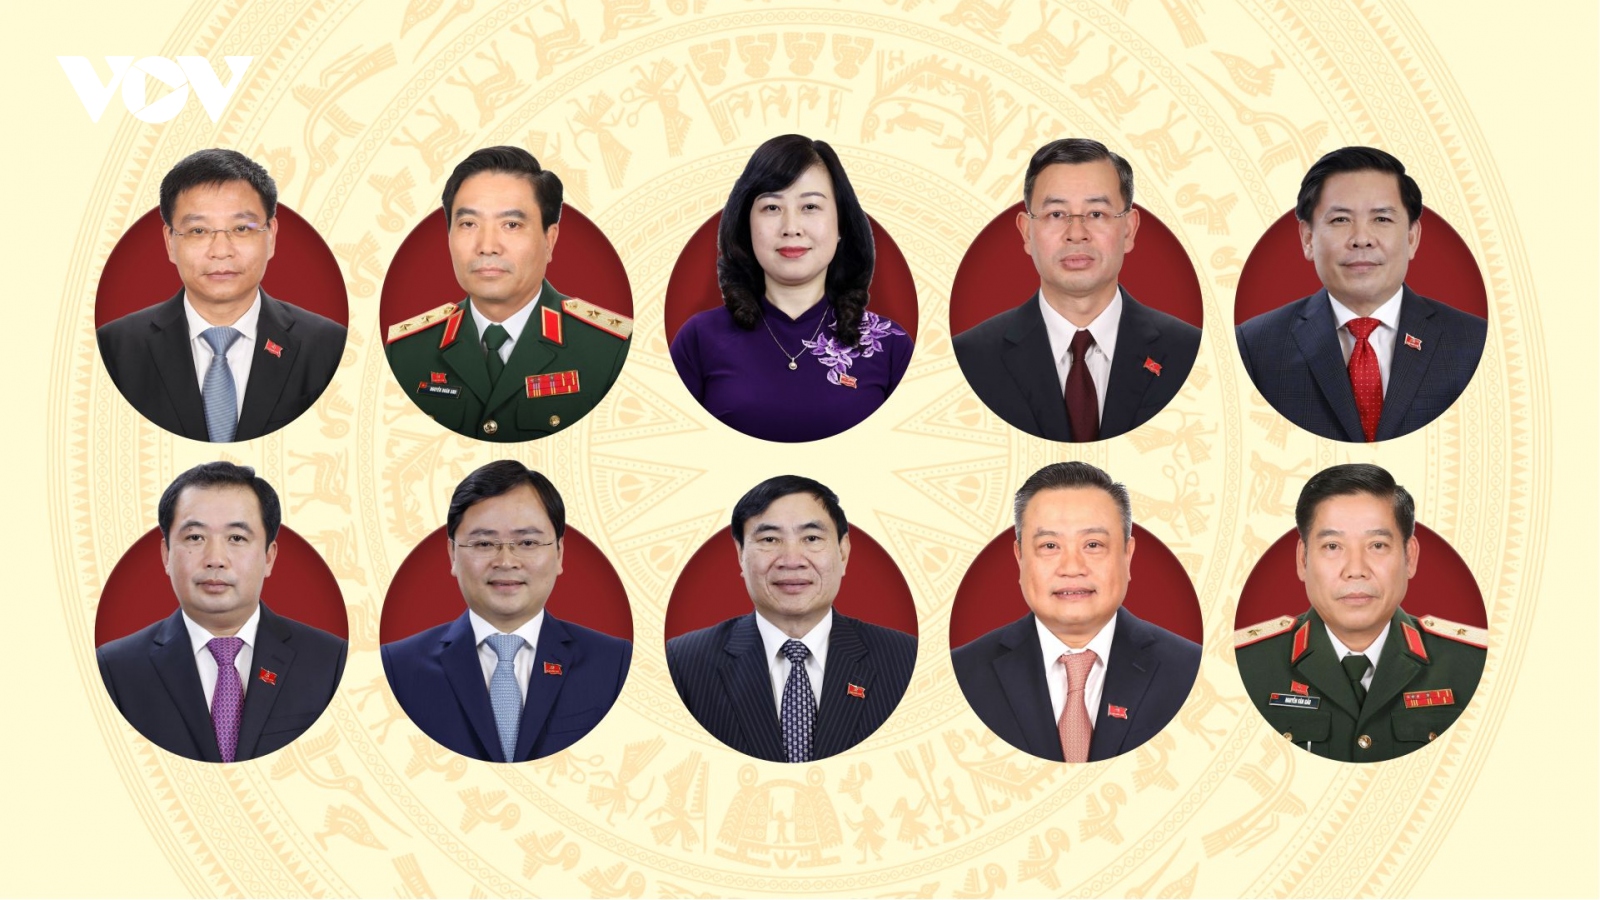 10 ủy viên Trung ương Đảng khóa XIII giữ chức vụ mới trong năm 2022